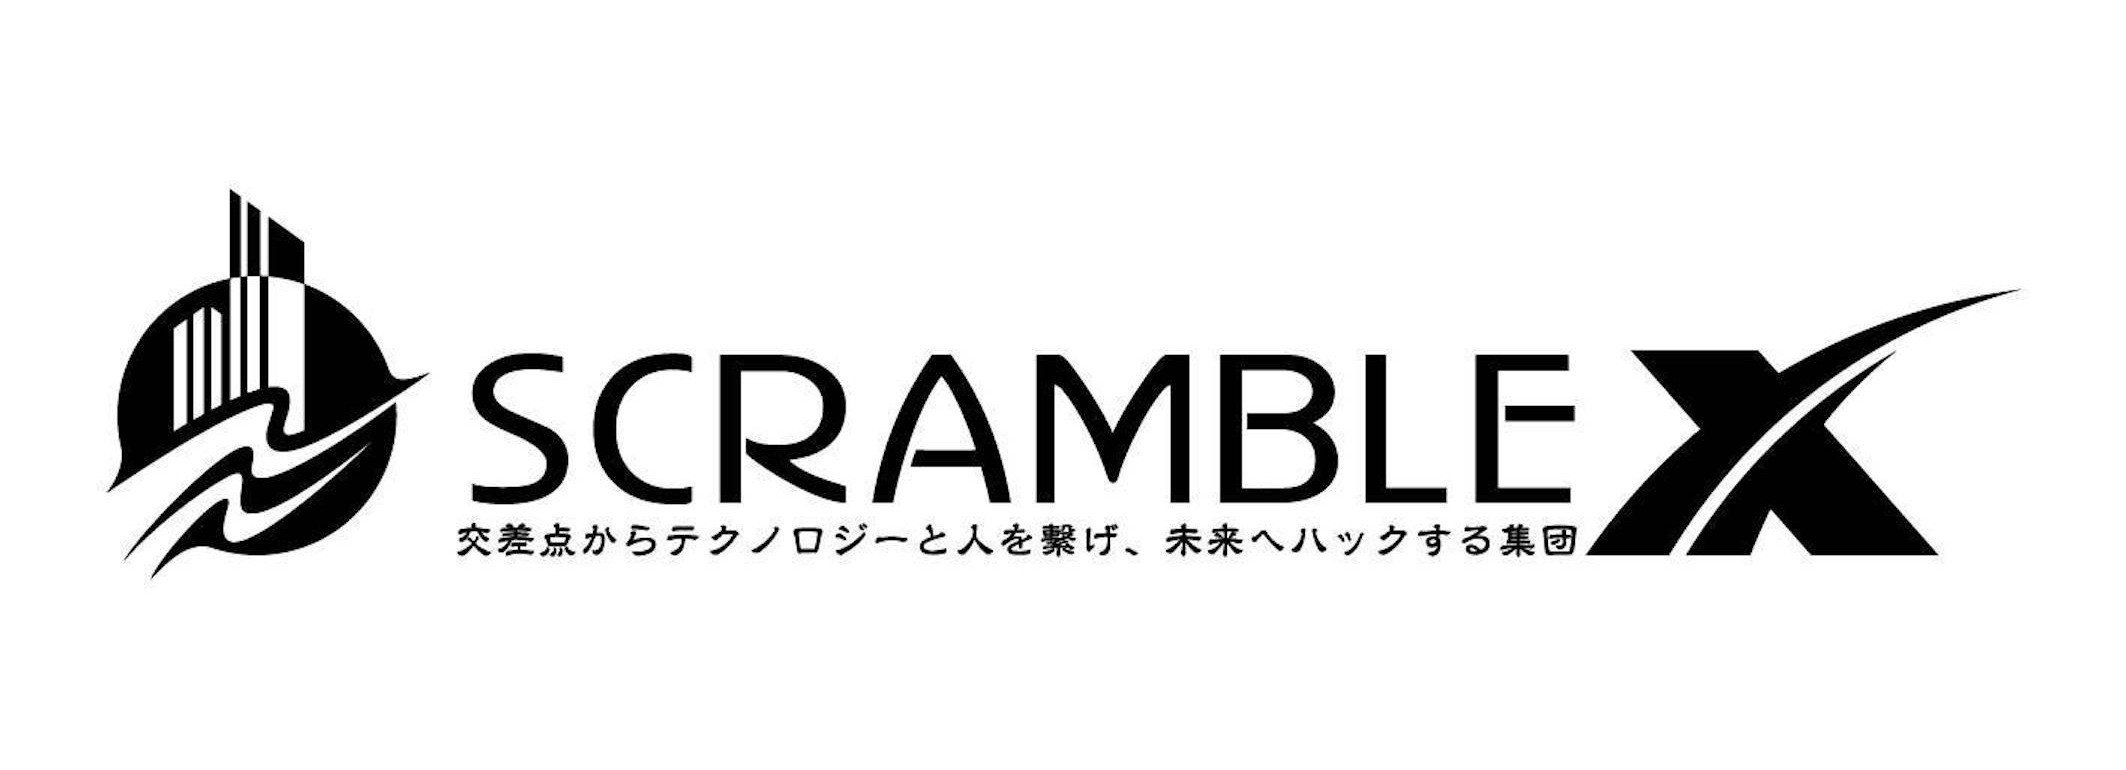 スクランブルX×Scramble